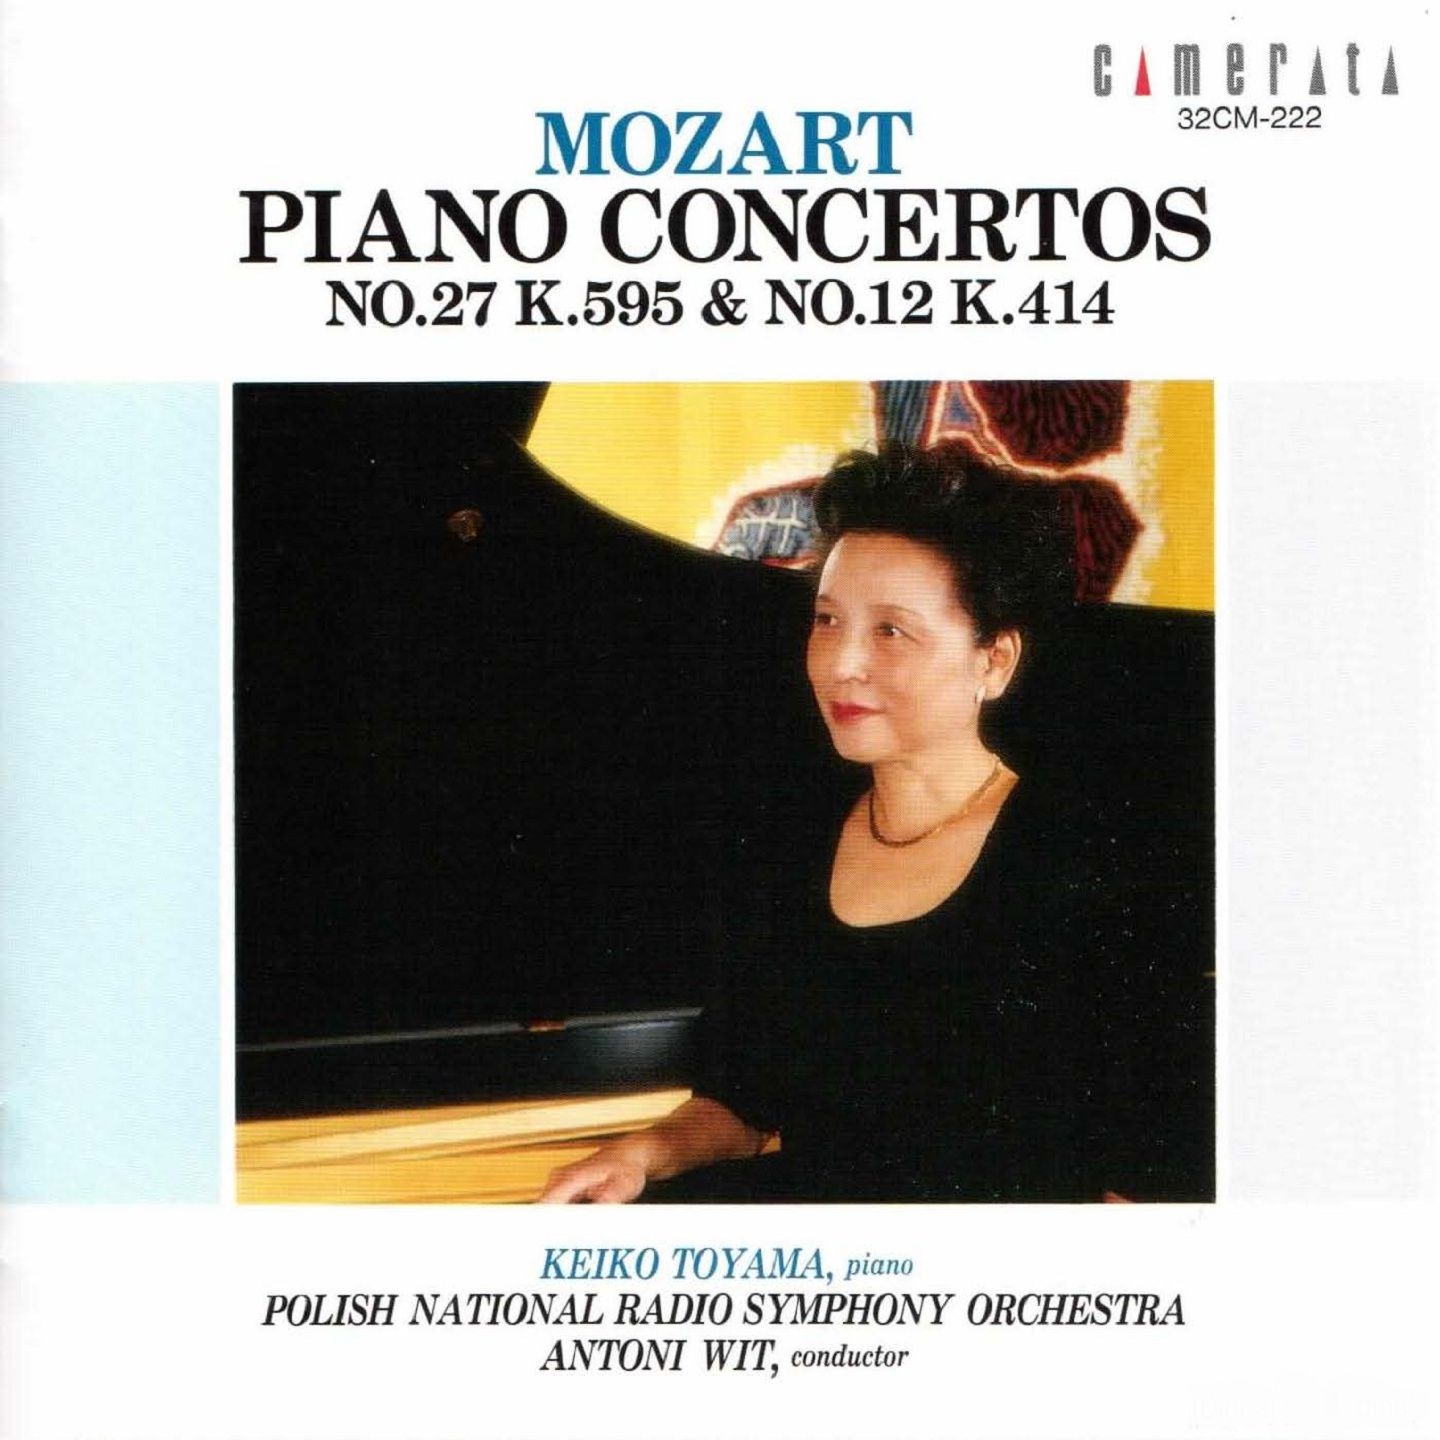 Piano Concerto No. 12 in A Major, K. 414: III. Rondo. Allegretto